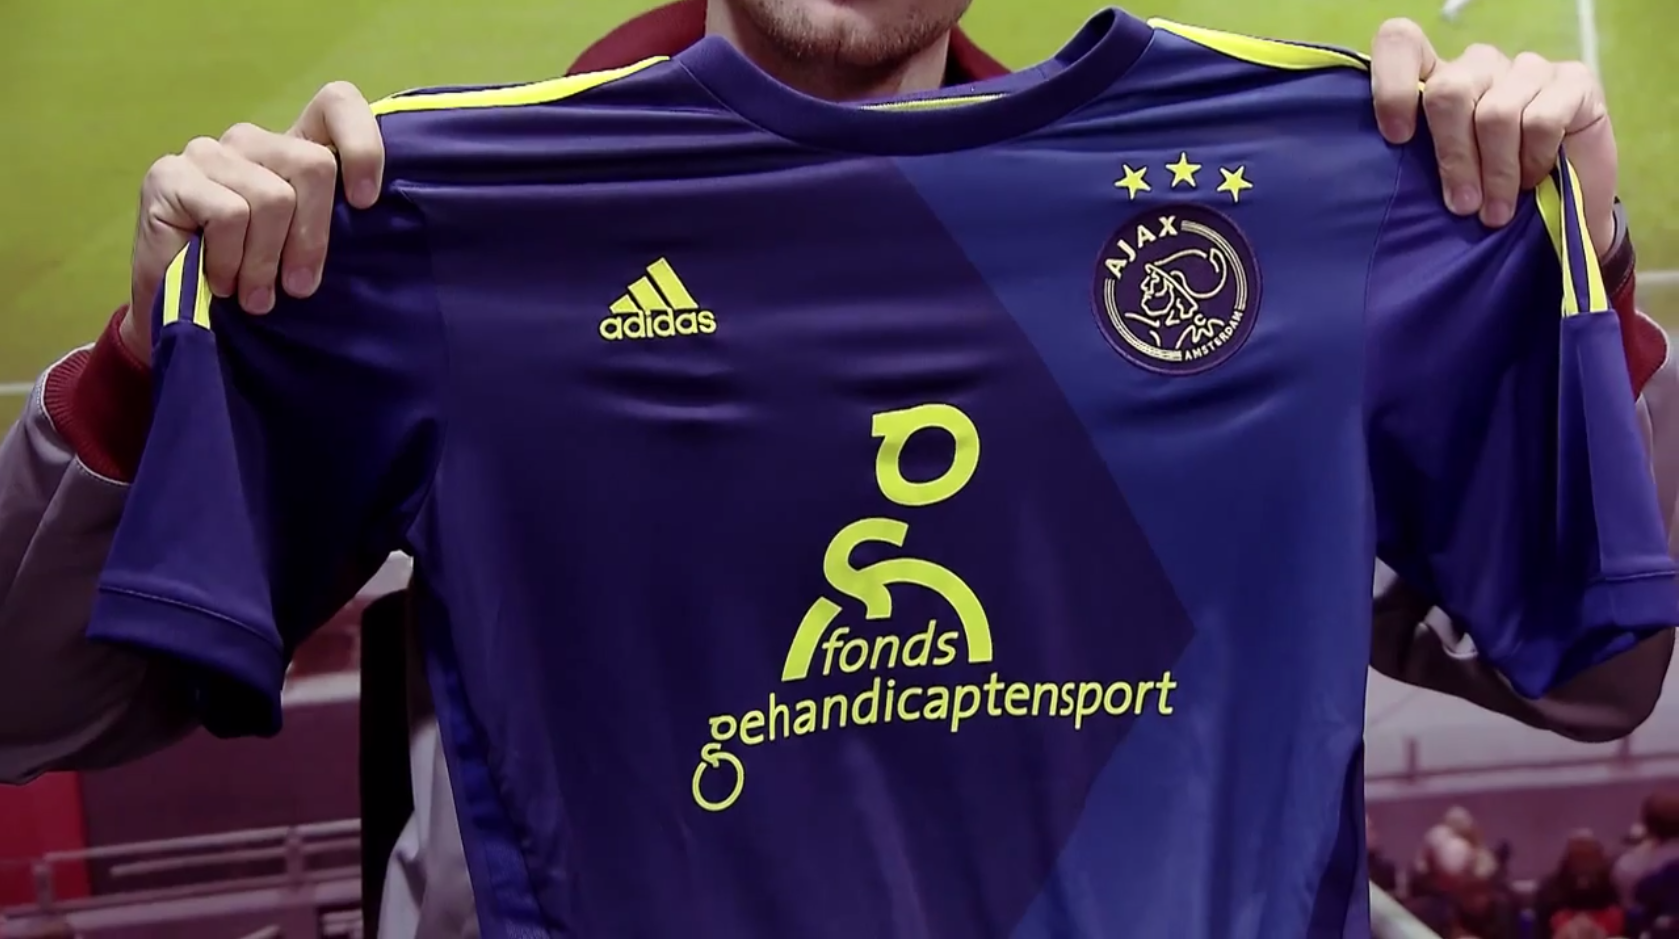 omhelzing Wedstrijd koper Ajax1.nl on Twitter: "Het uitshirt heeft veel weg van het shirt uit  2010/2011. Opnieuw blauw met geel. Zouden jullie het shirt kopen? #Ajax  http://t.co/kKeAX8GEGX" / Twitter